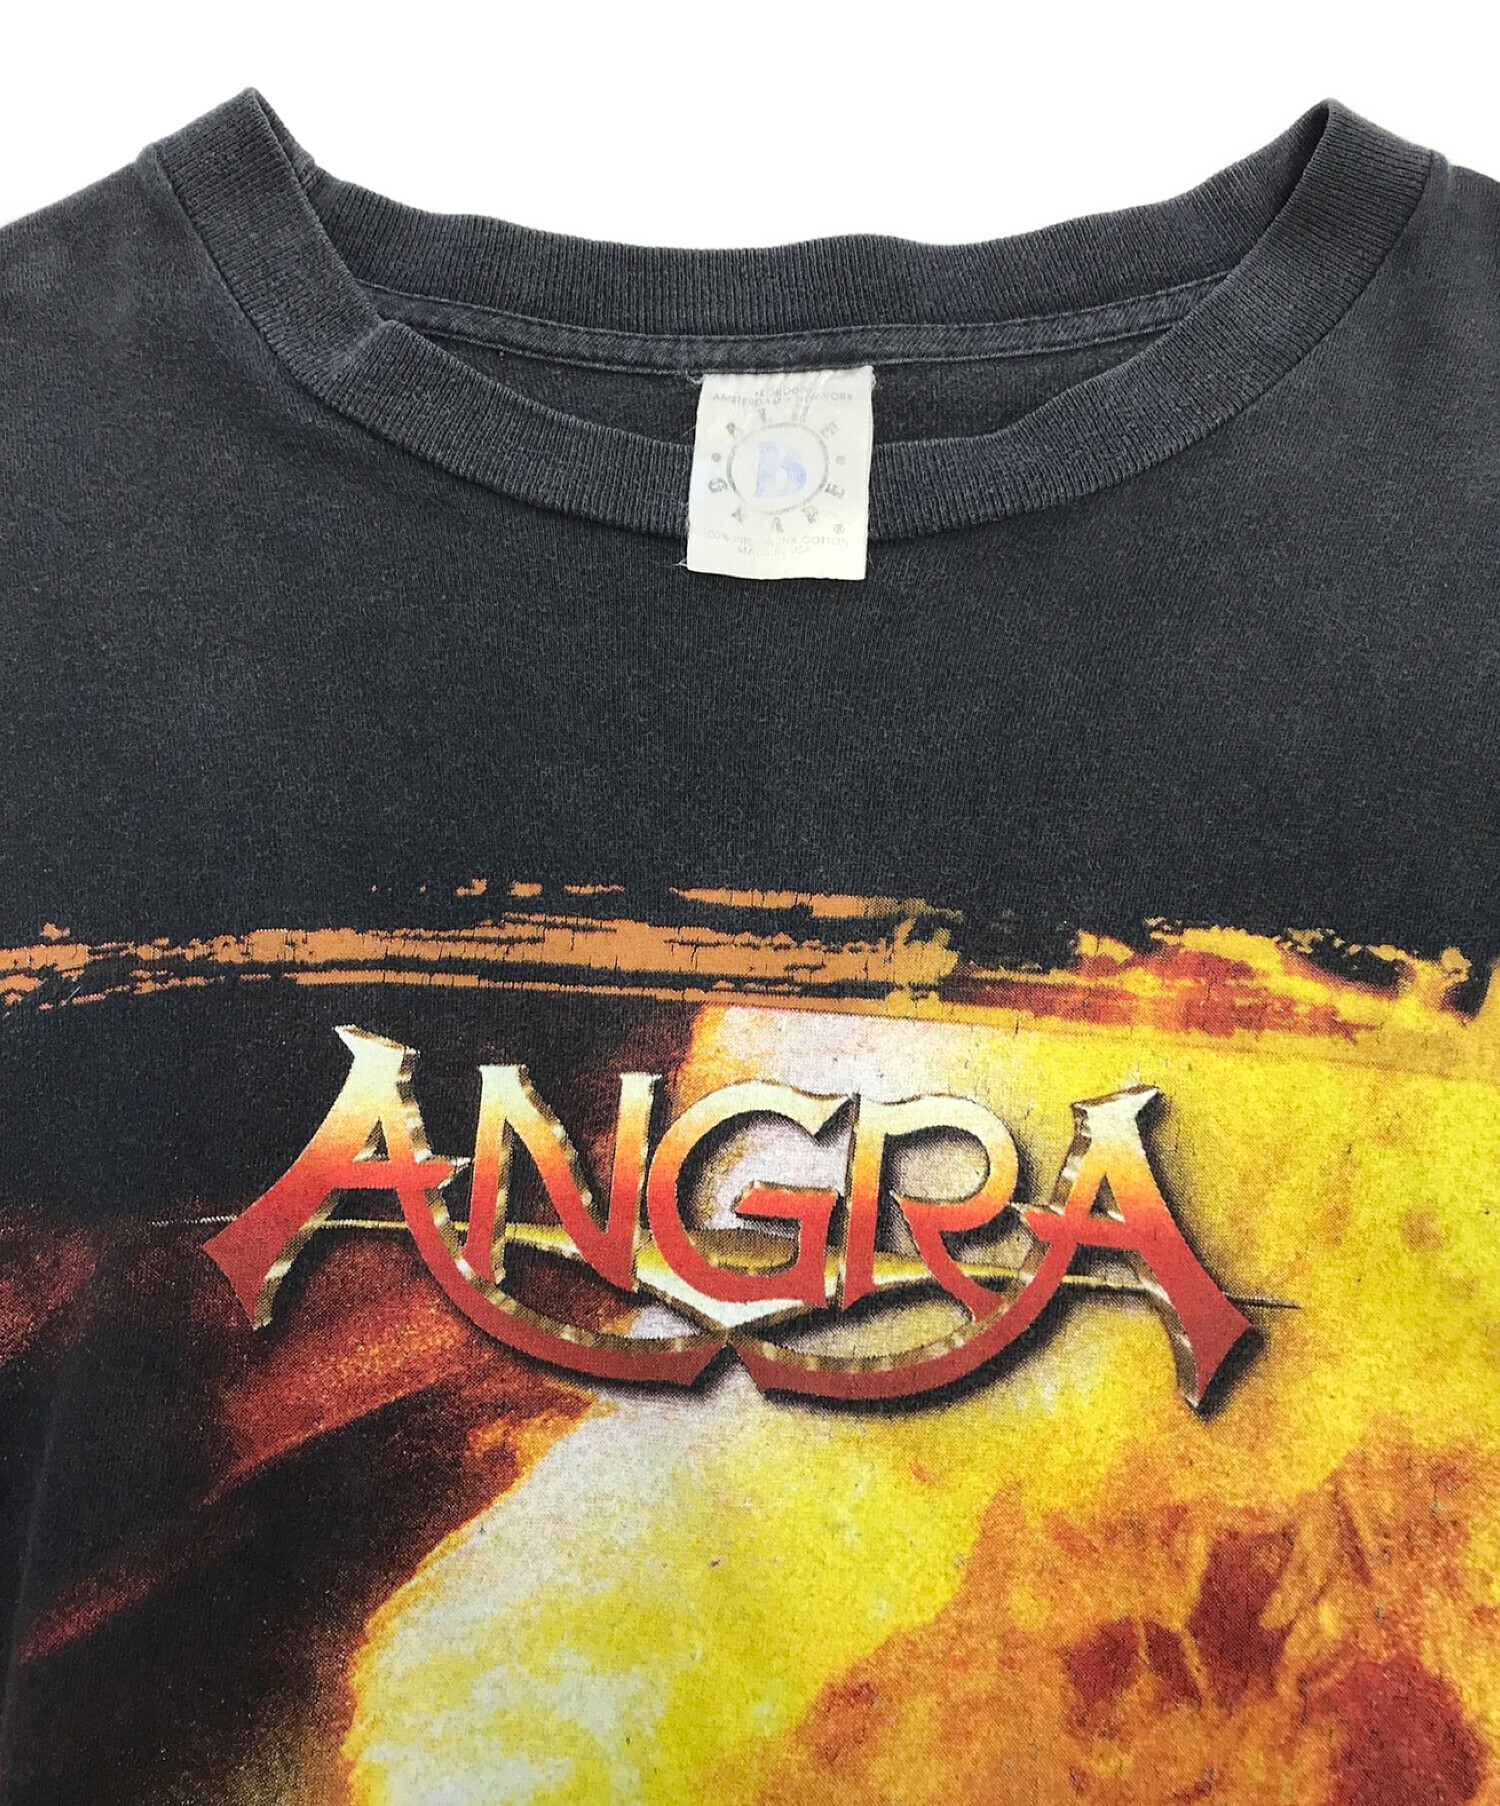 バンドTシャツ (バンドTシャツ) ANGRA 90’sバンドL/STシャツ ブラック サイズ:表記なし